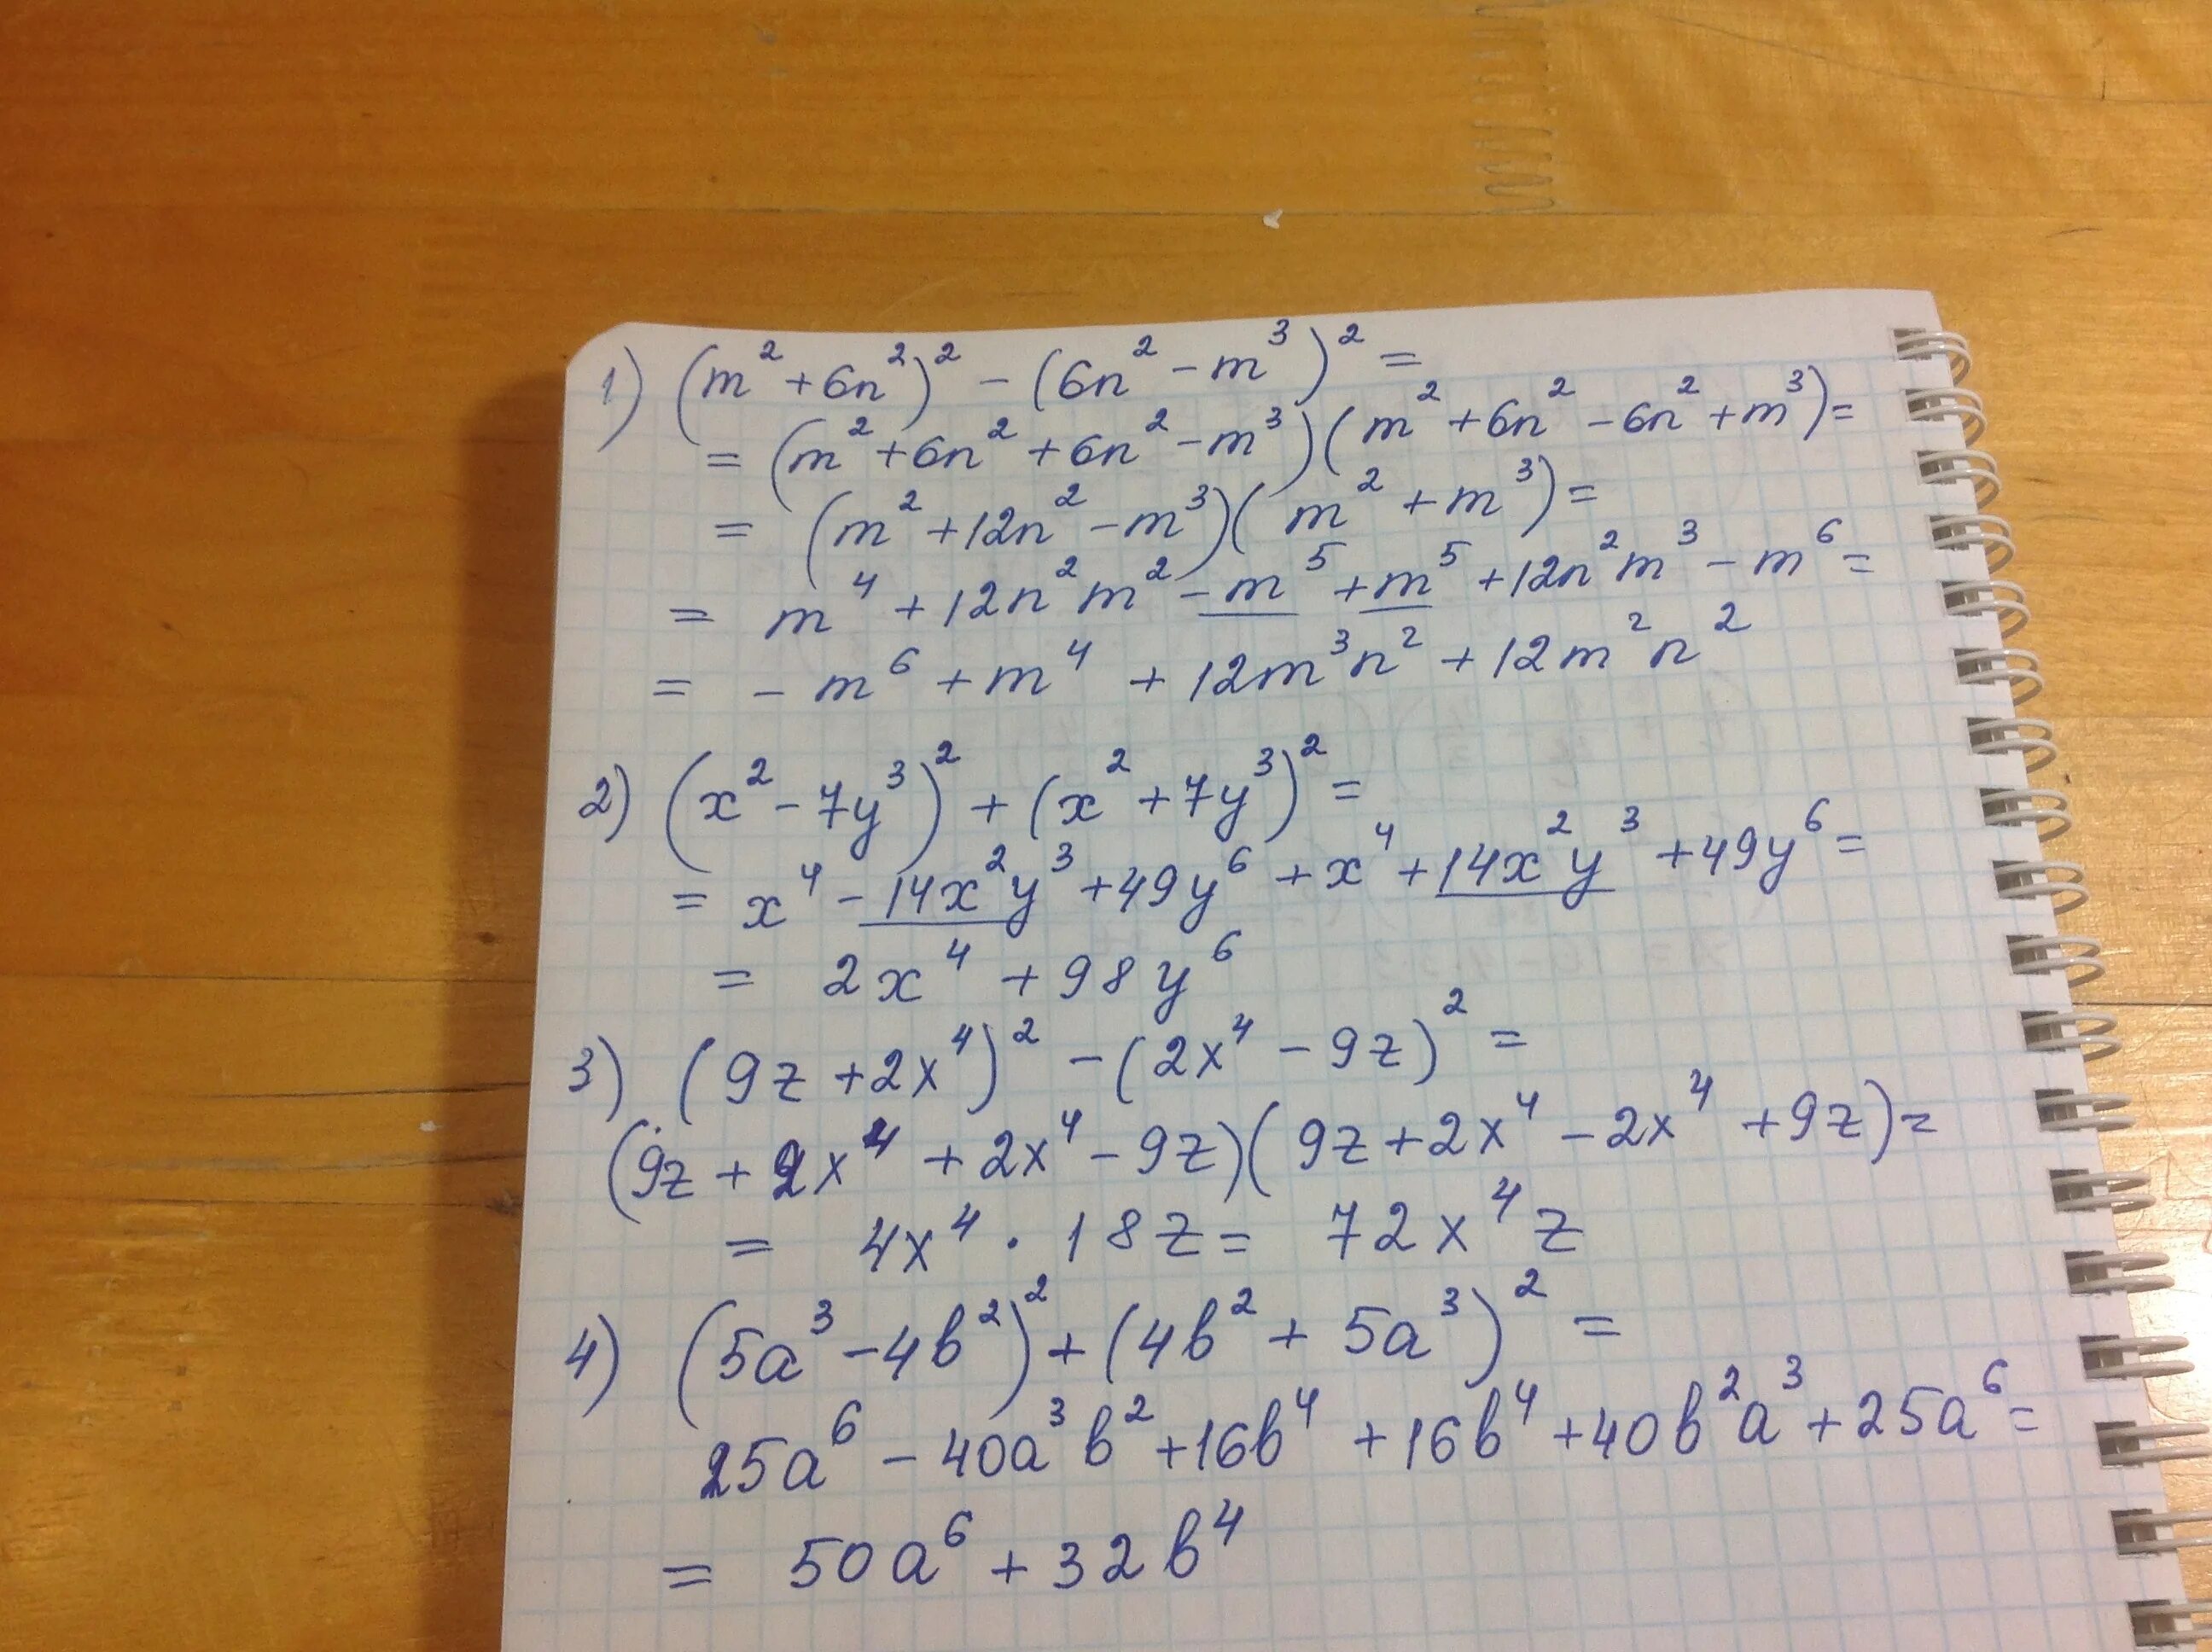 2 4 1 5y 0 7y. (M+2)2 - (3m + 3)2 = 0. Упростите выражение 1 m n 1 m n 2 3m 3n. (0-3)^2+(5-2)^2. (3x+1)^2+(x-7)^2.